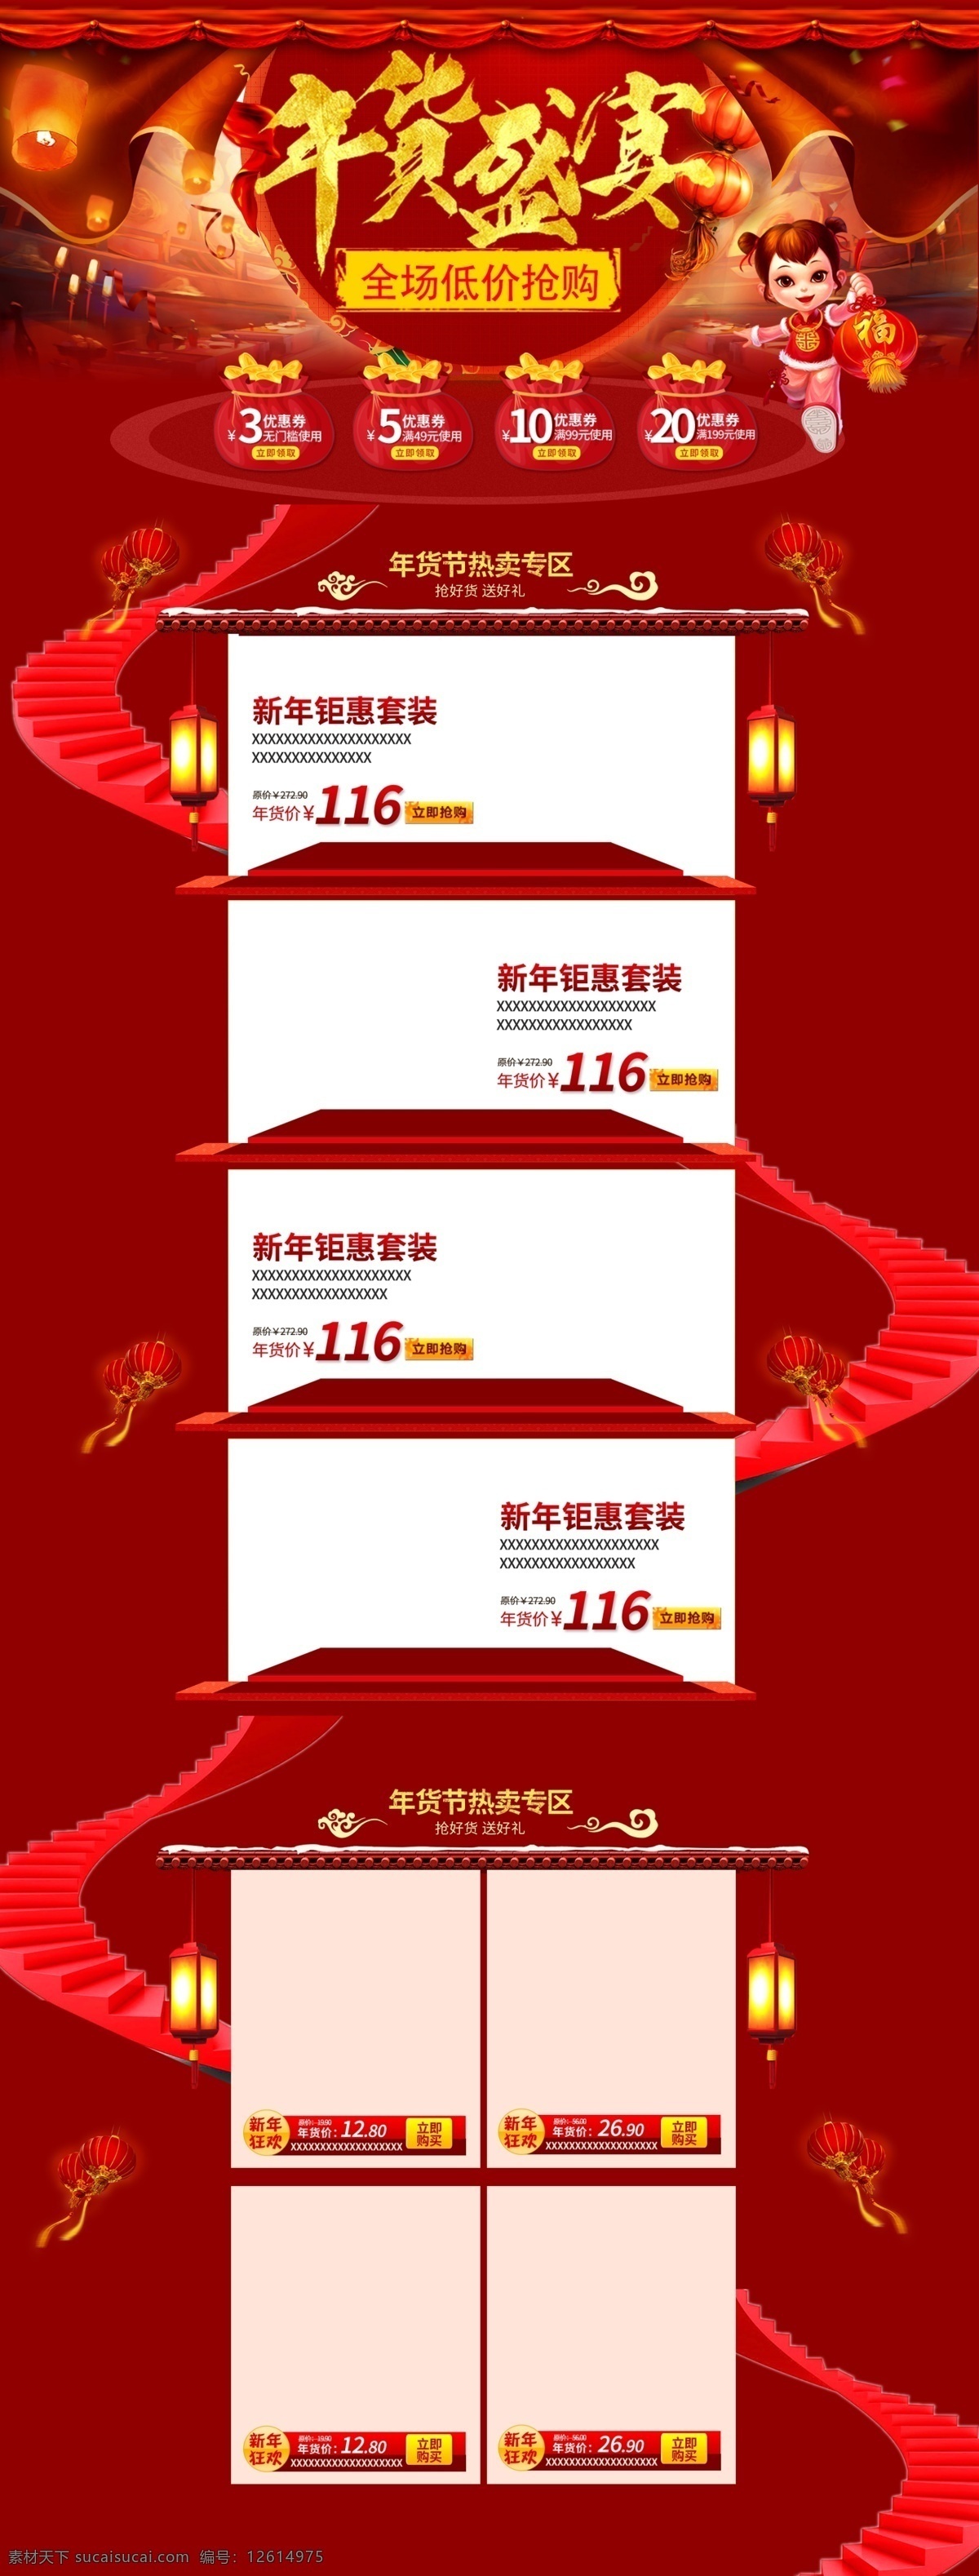 红色 节日 简约 喜庆 美食 年货 盛宴 电商 首页 模板 psd分层 背景 大图 灯笼 零食 食品